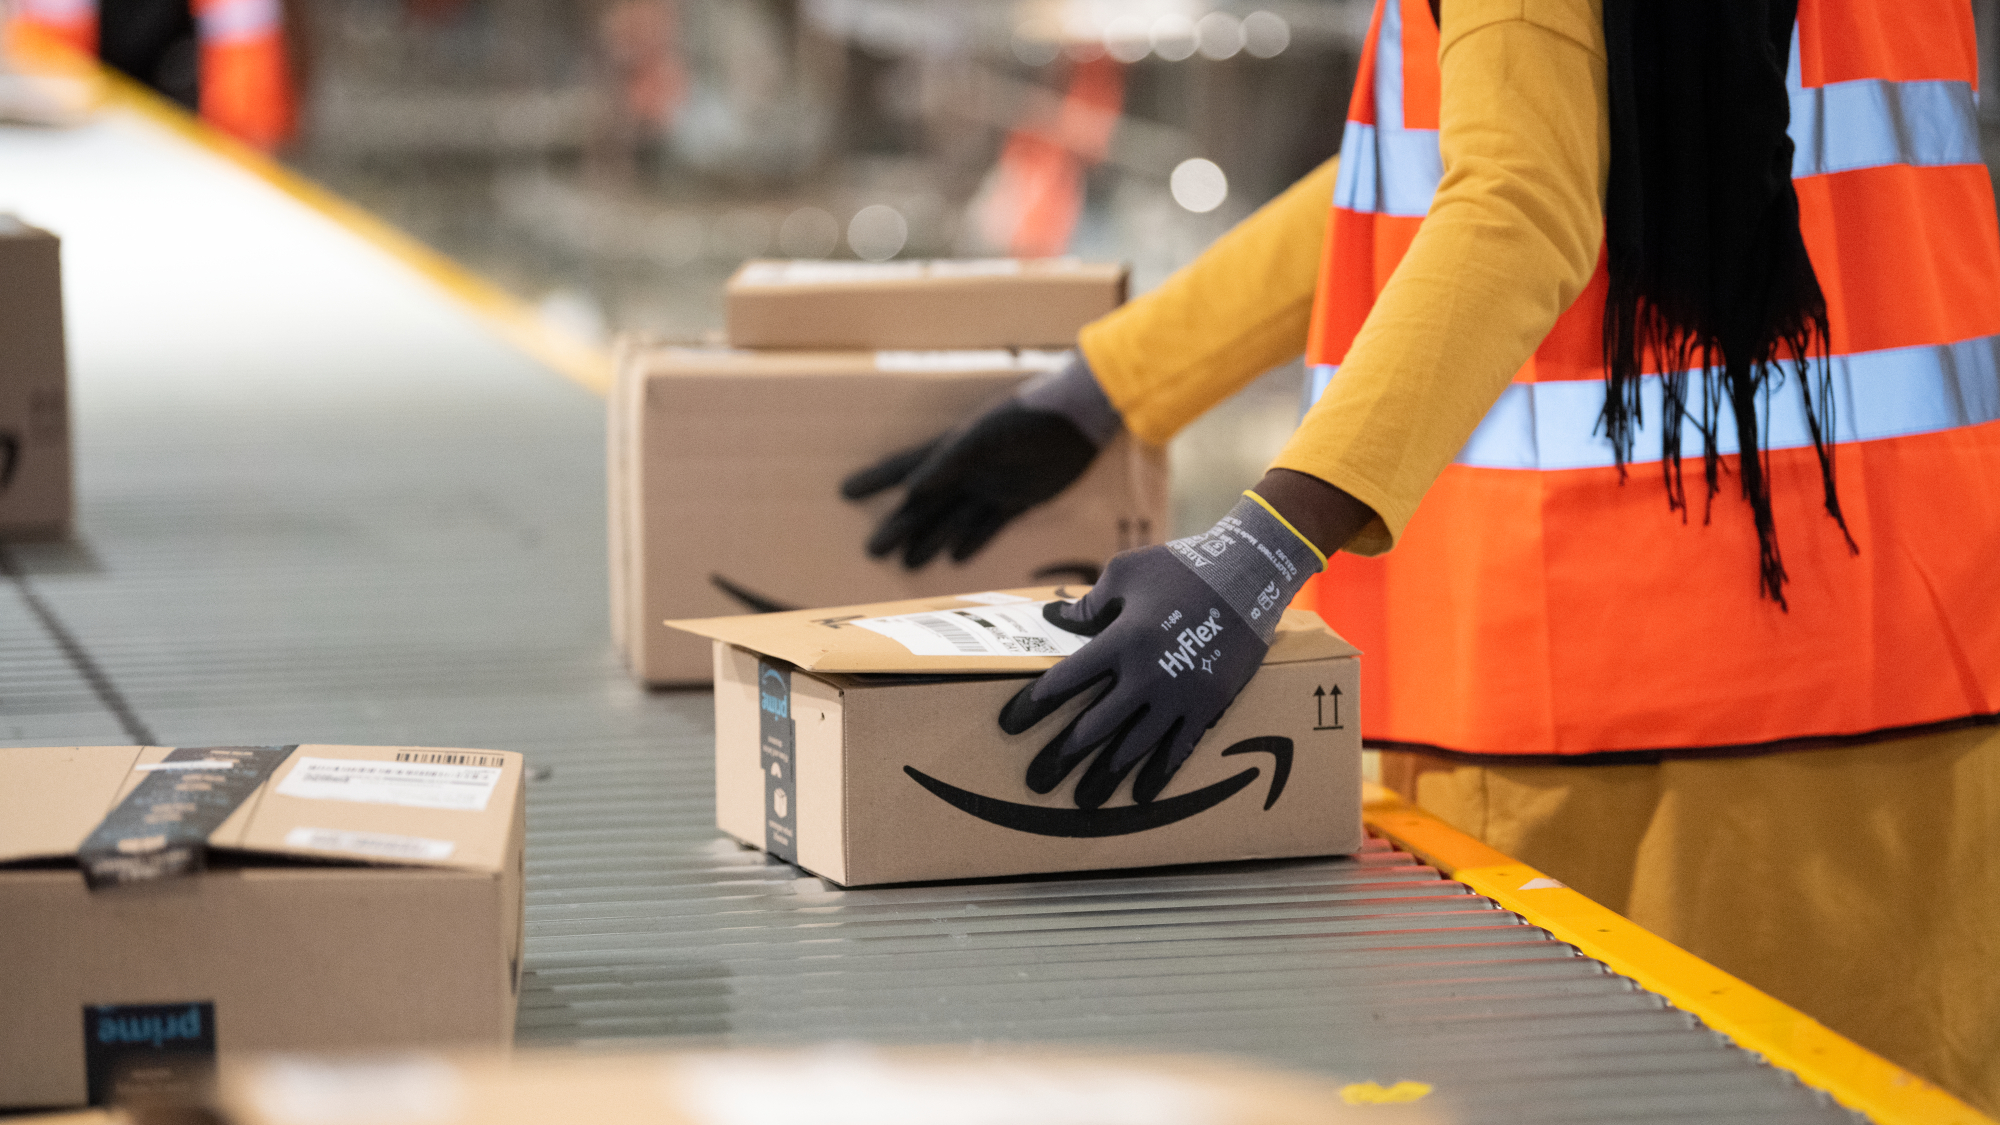 Amazon boxes move on conveyor